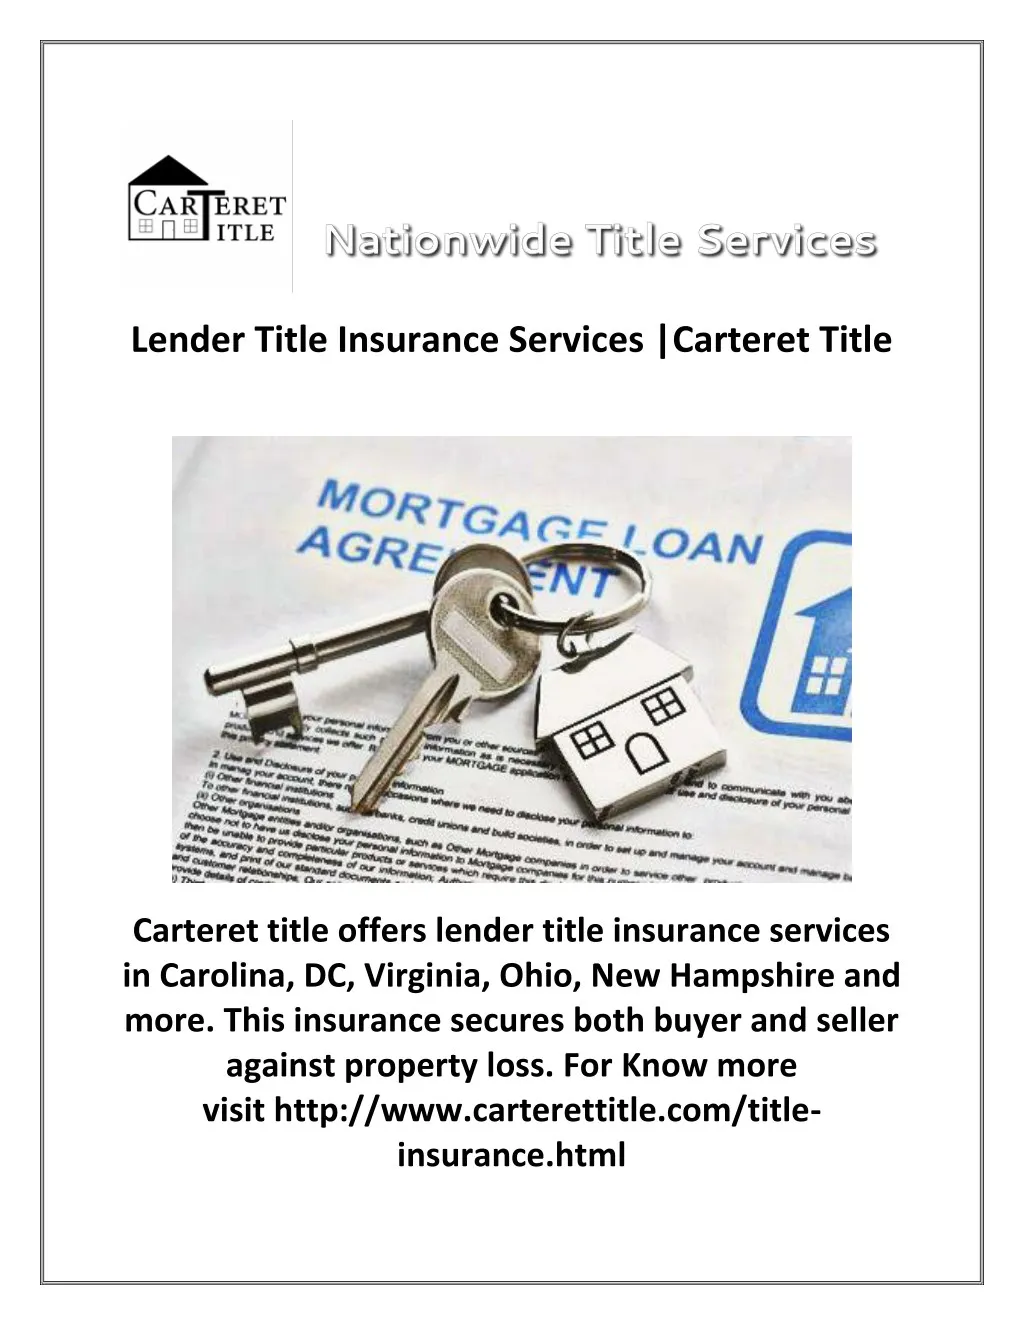 lender title insurance services carteret title